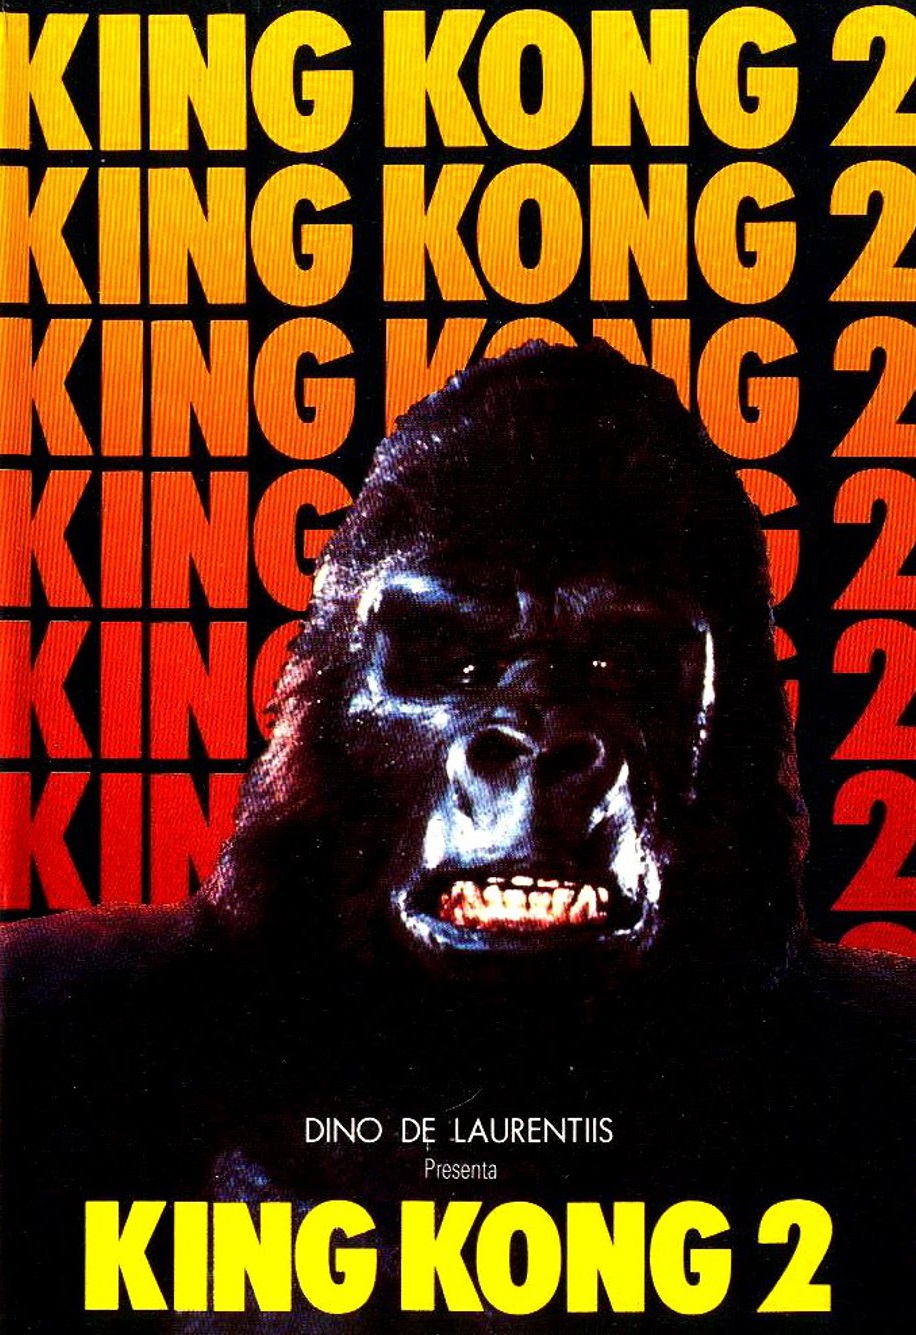 King Kong 2 [HD] (1986)